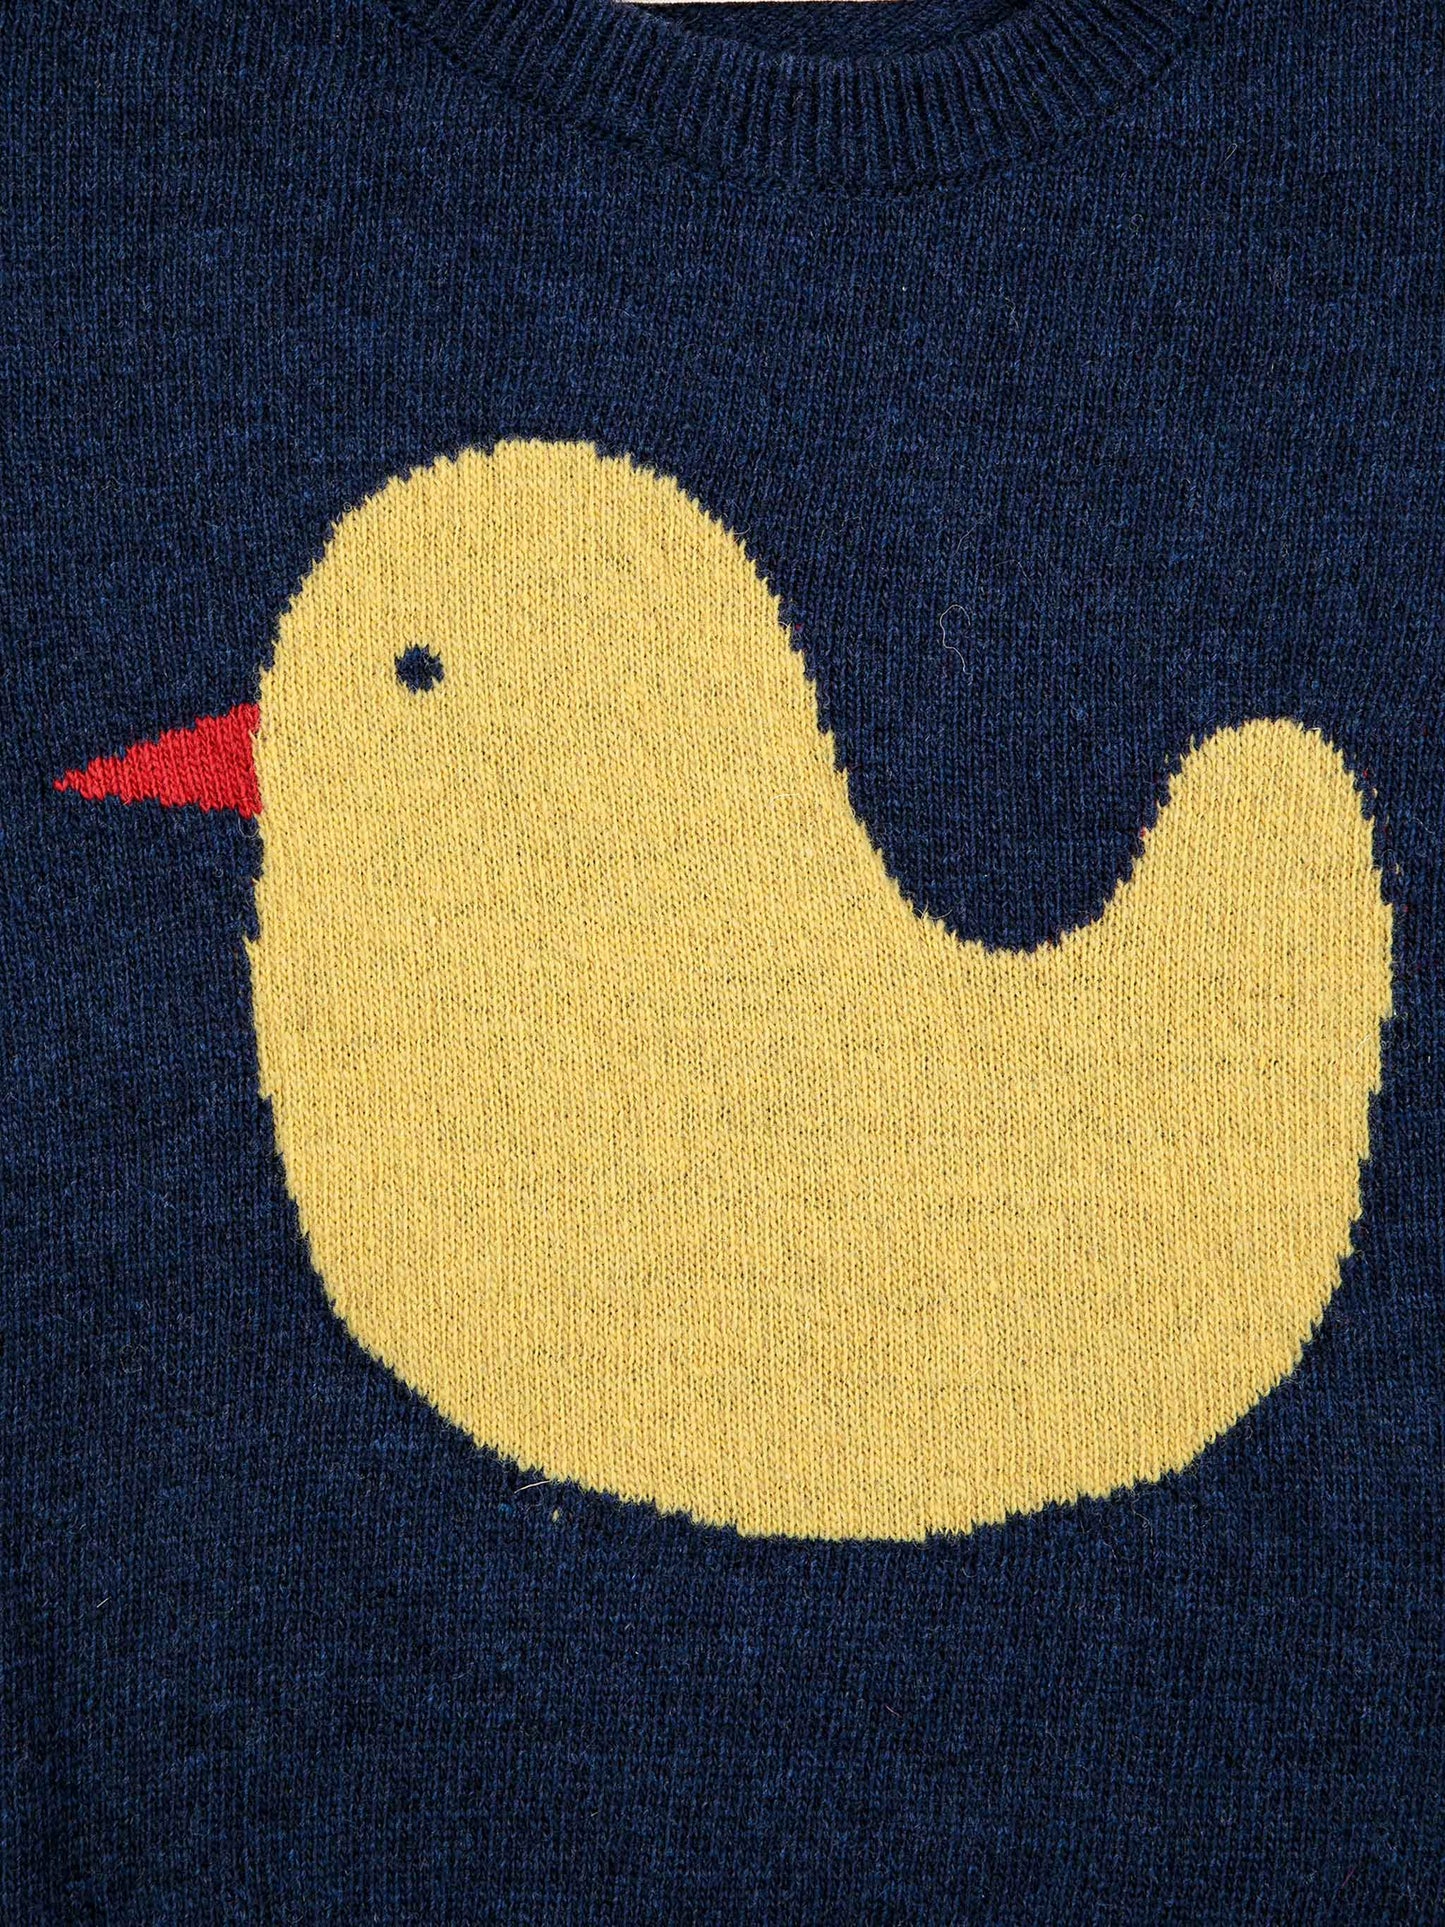 Rubber Duck intarsia jumper